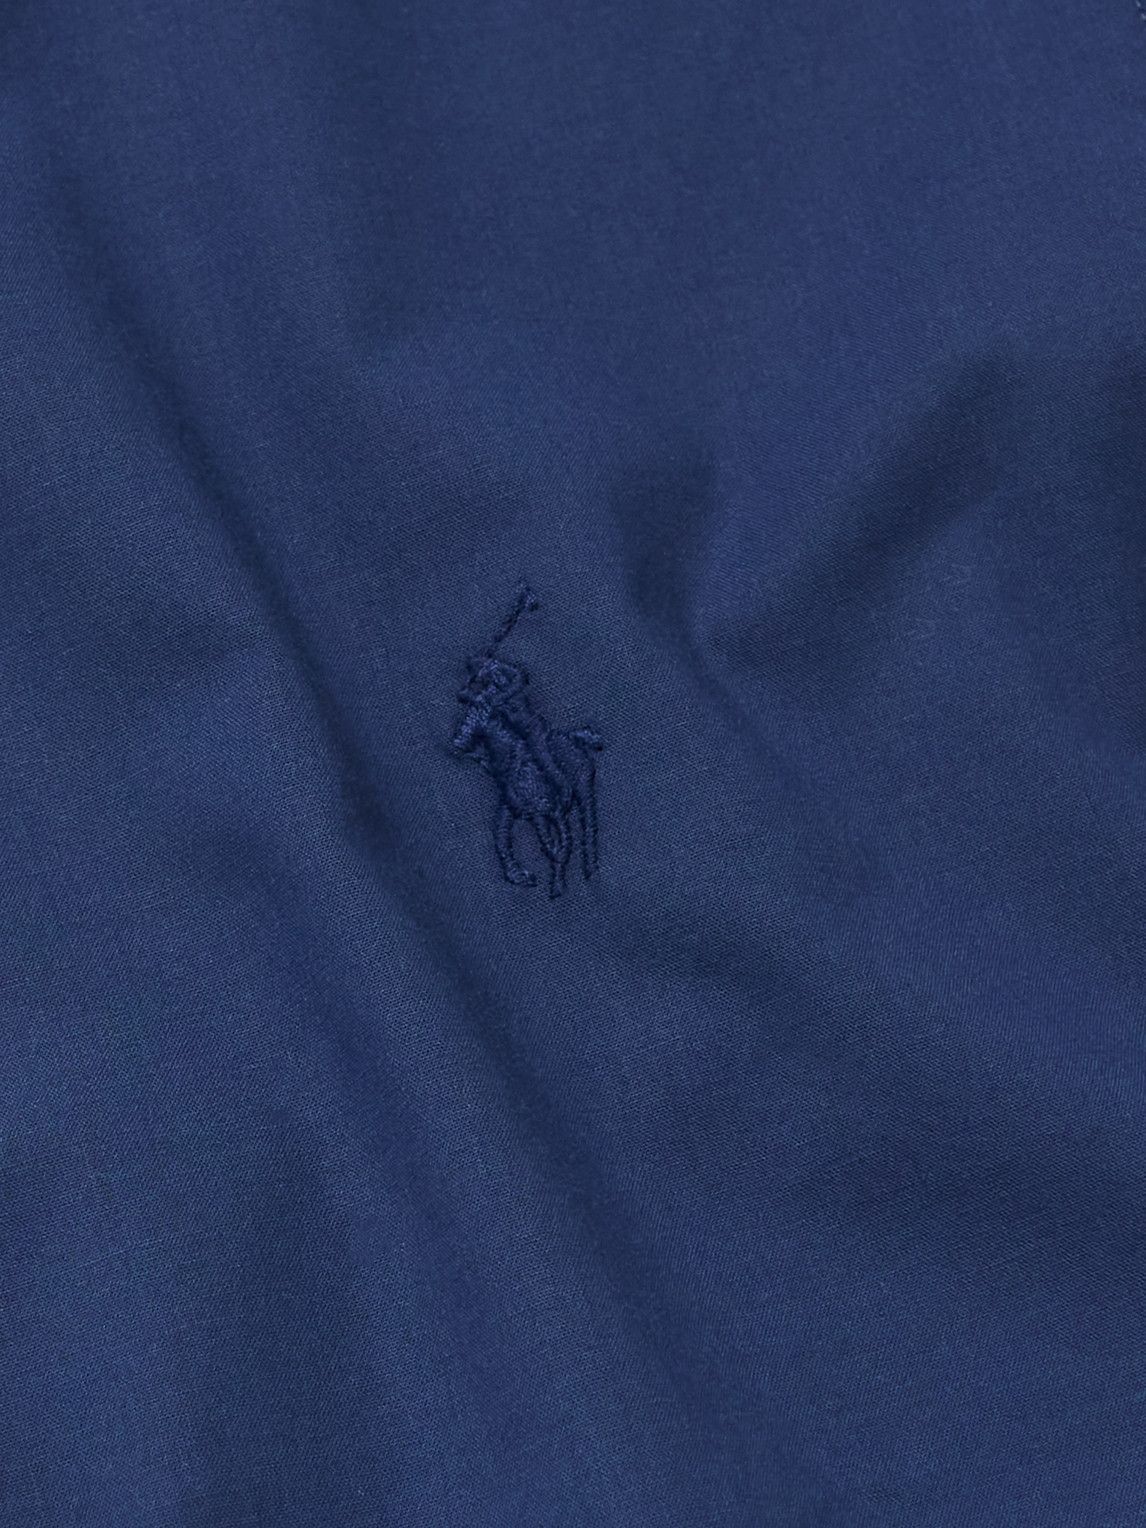 Polo Ralph Lauren - Button-Down Collar Logo-Embroidered Cotton-Blend Poplin Shirt - Blue